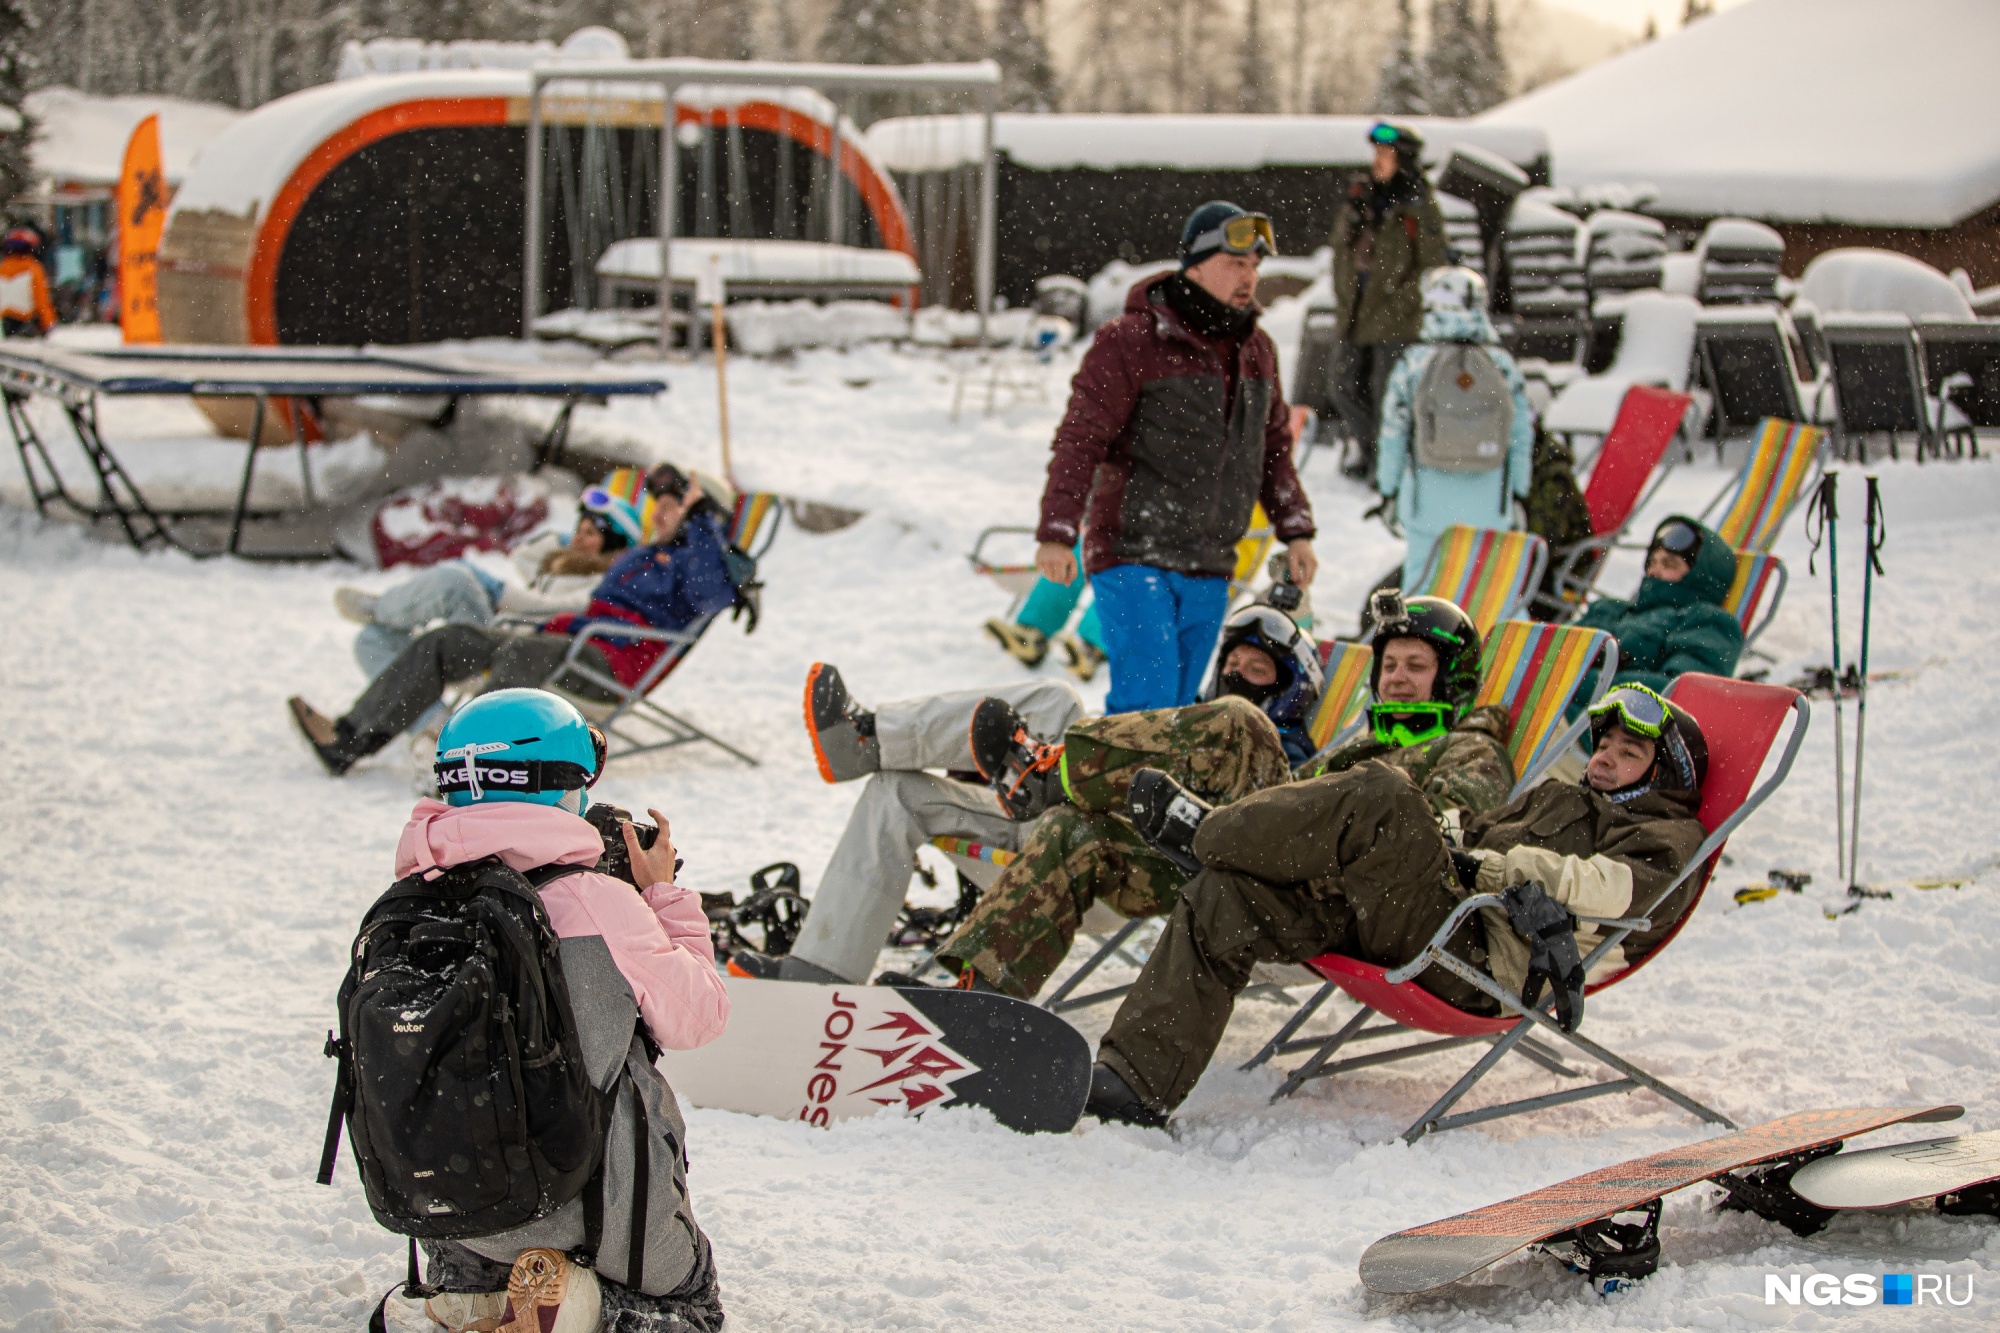 В этом году у туристов появилась возможность пополнять ски-пасс онлайн. Таблички с <nobr class="_">QR-кодами</nobr> развешены по всей территории комплекса